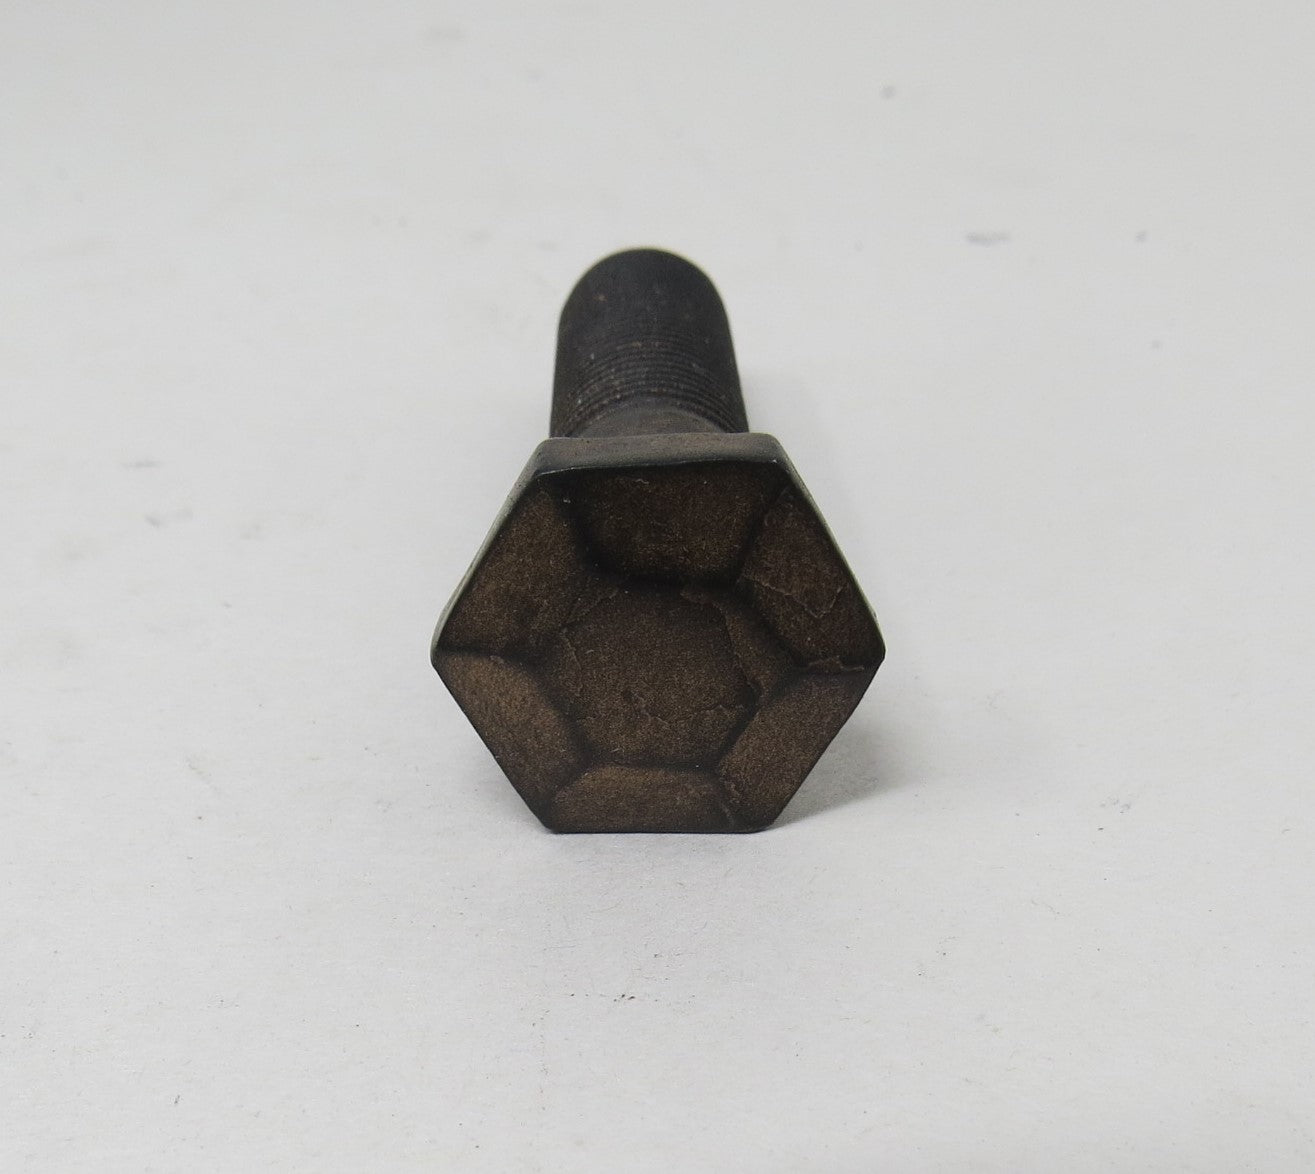 Tirafondo de cabeza hexagonal piramidal de 3/4" de diámetro